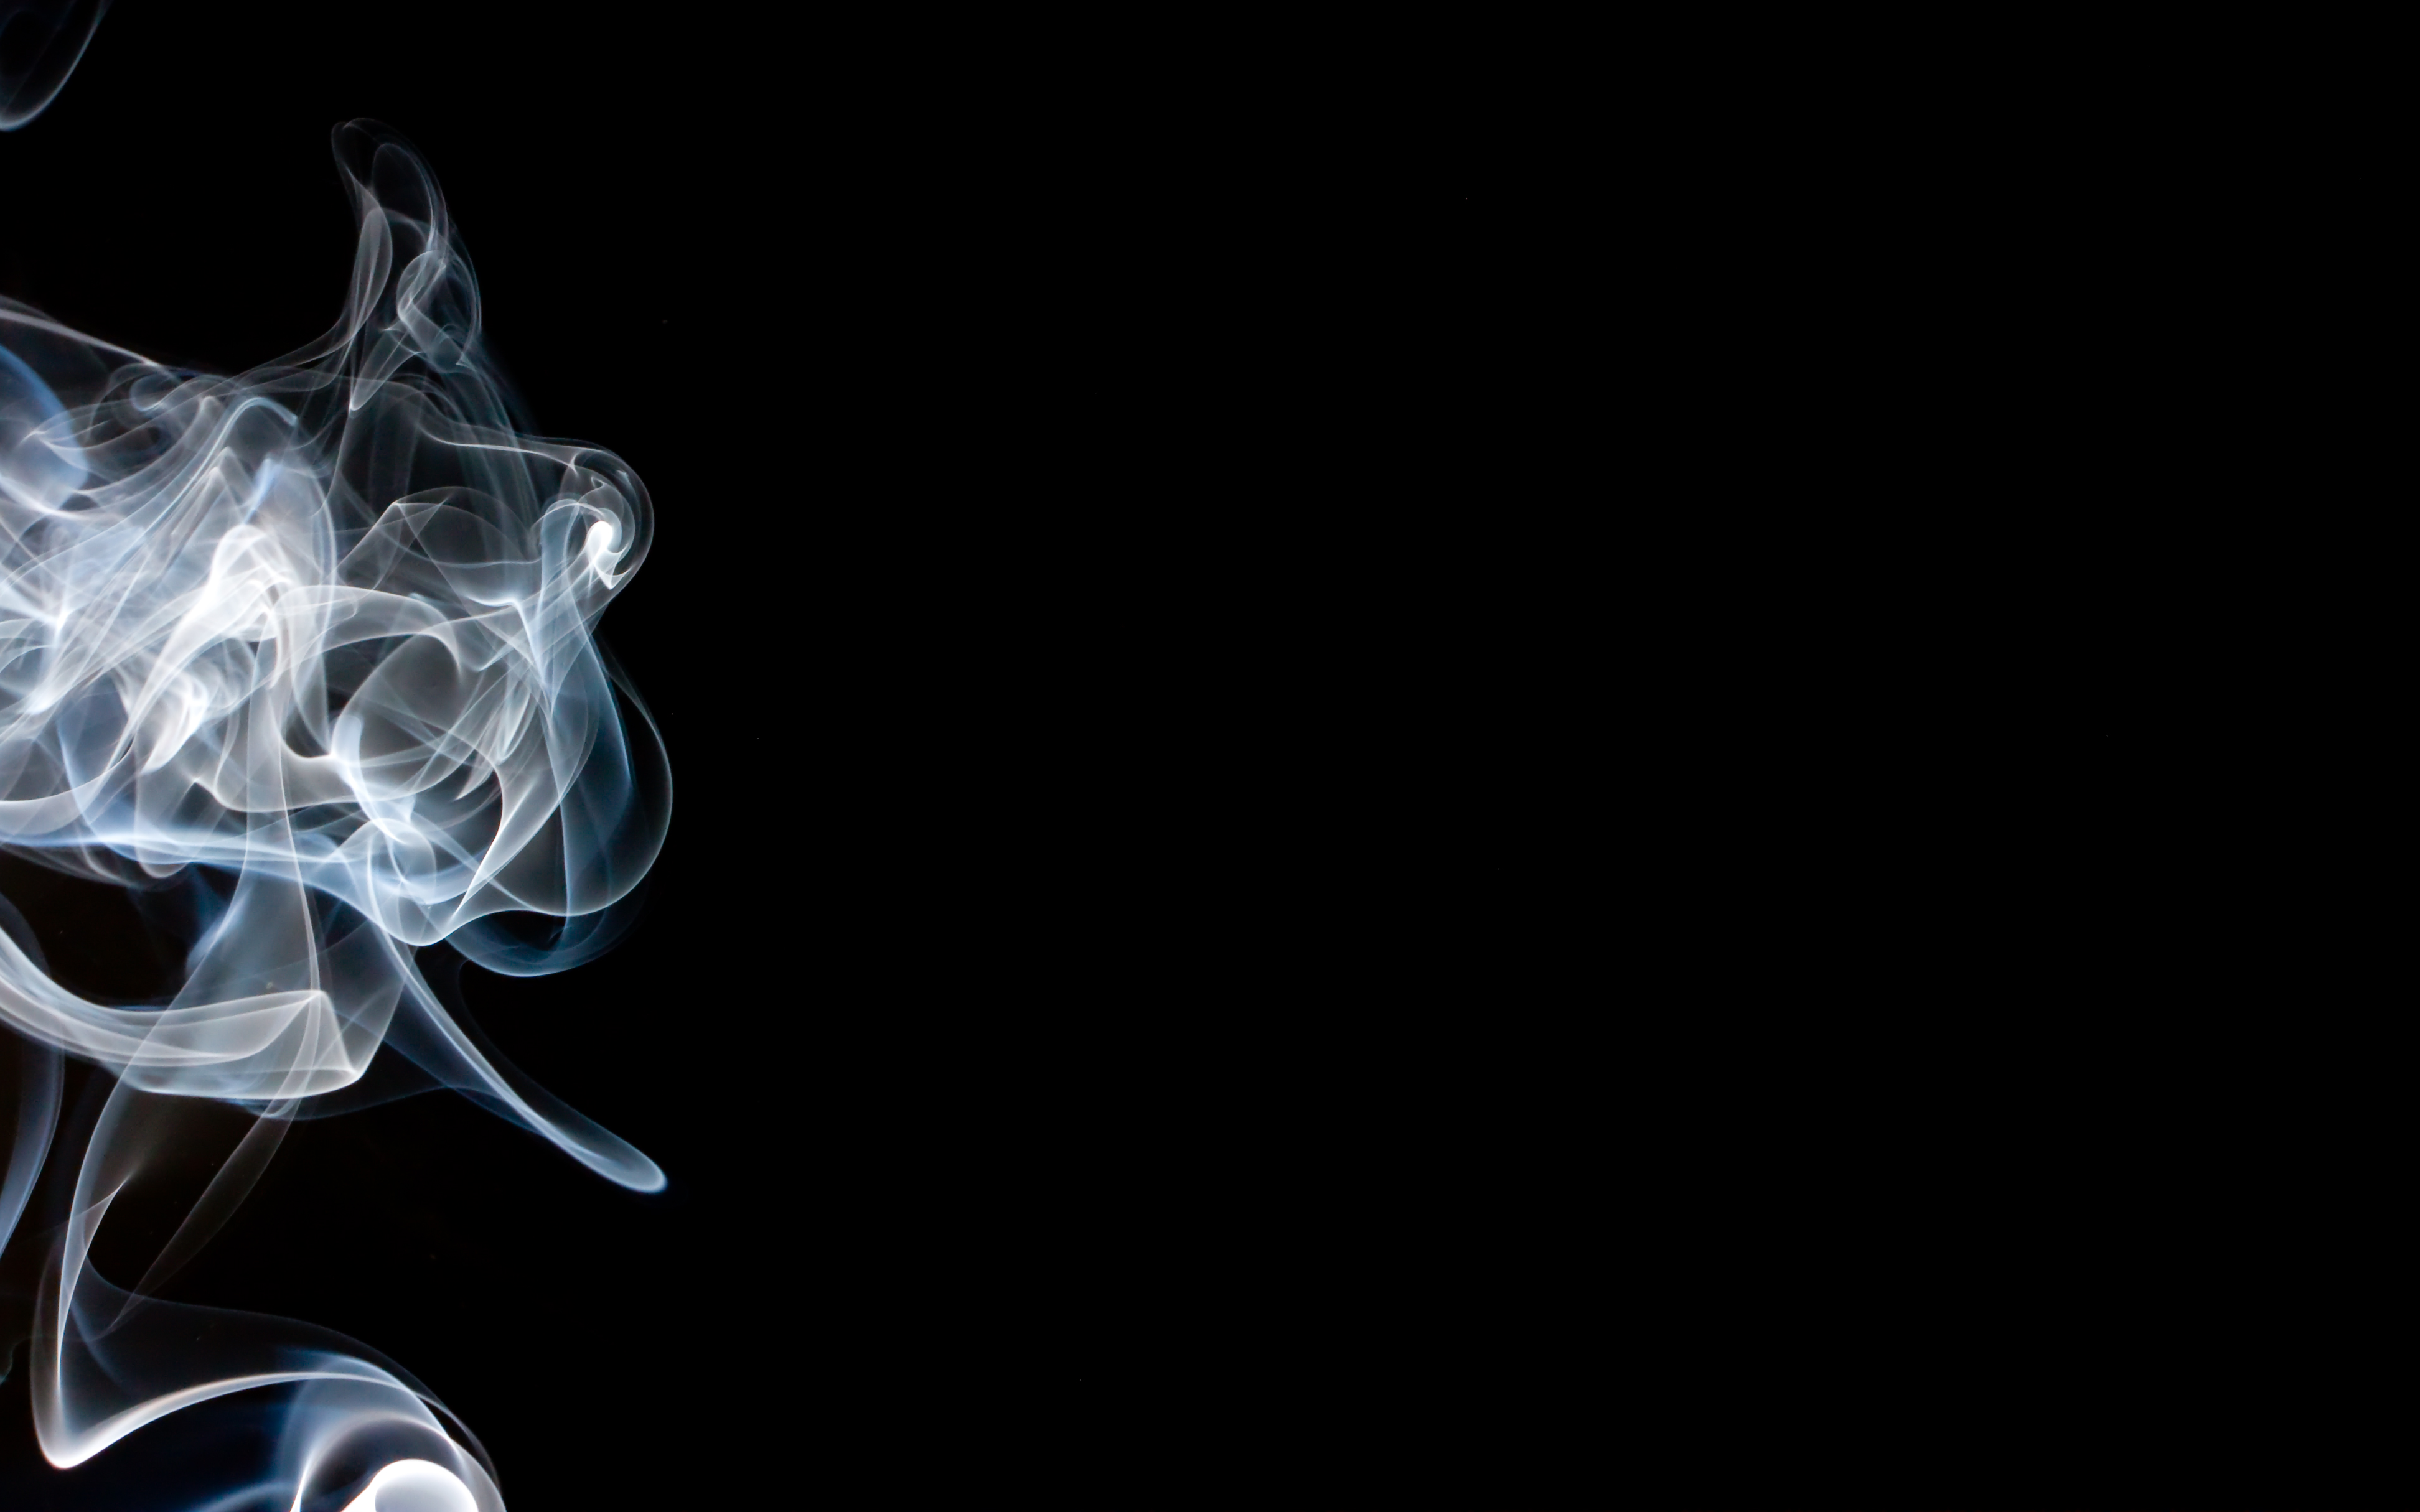 煙の壁紙,煙,喫煙,黒と白,闇,グラフィックデザイン